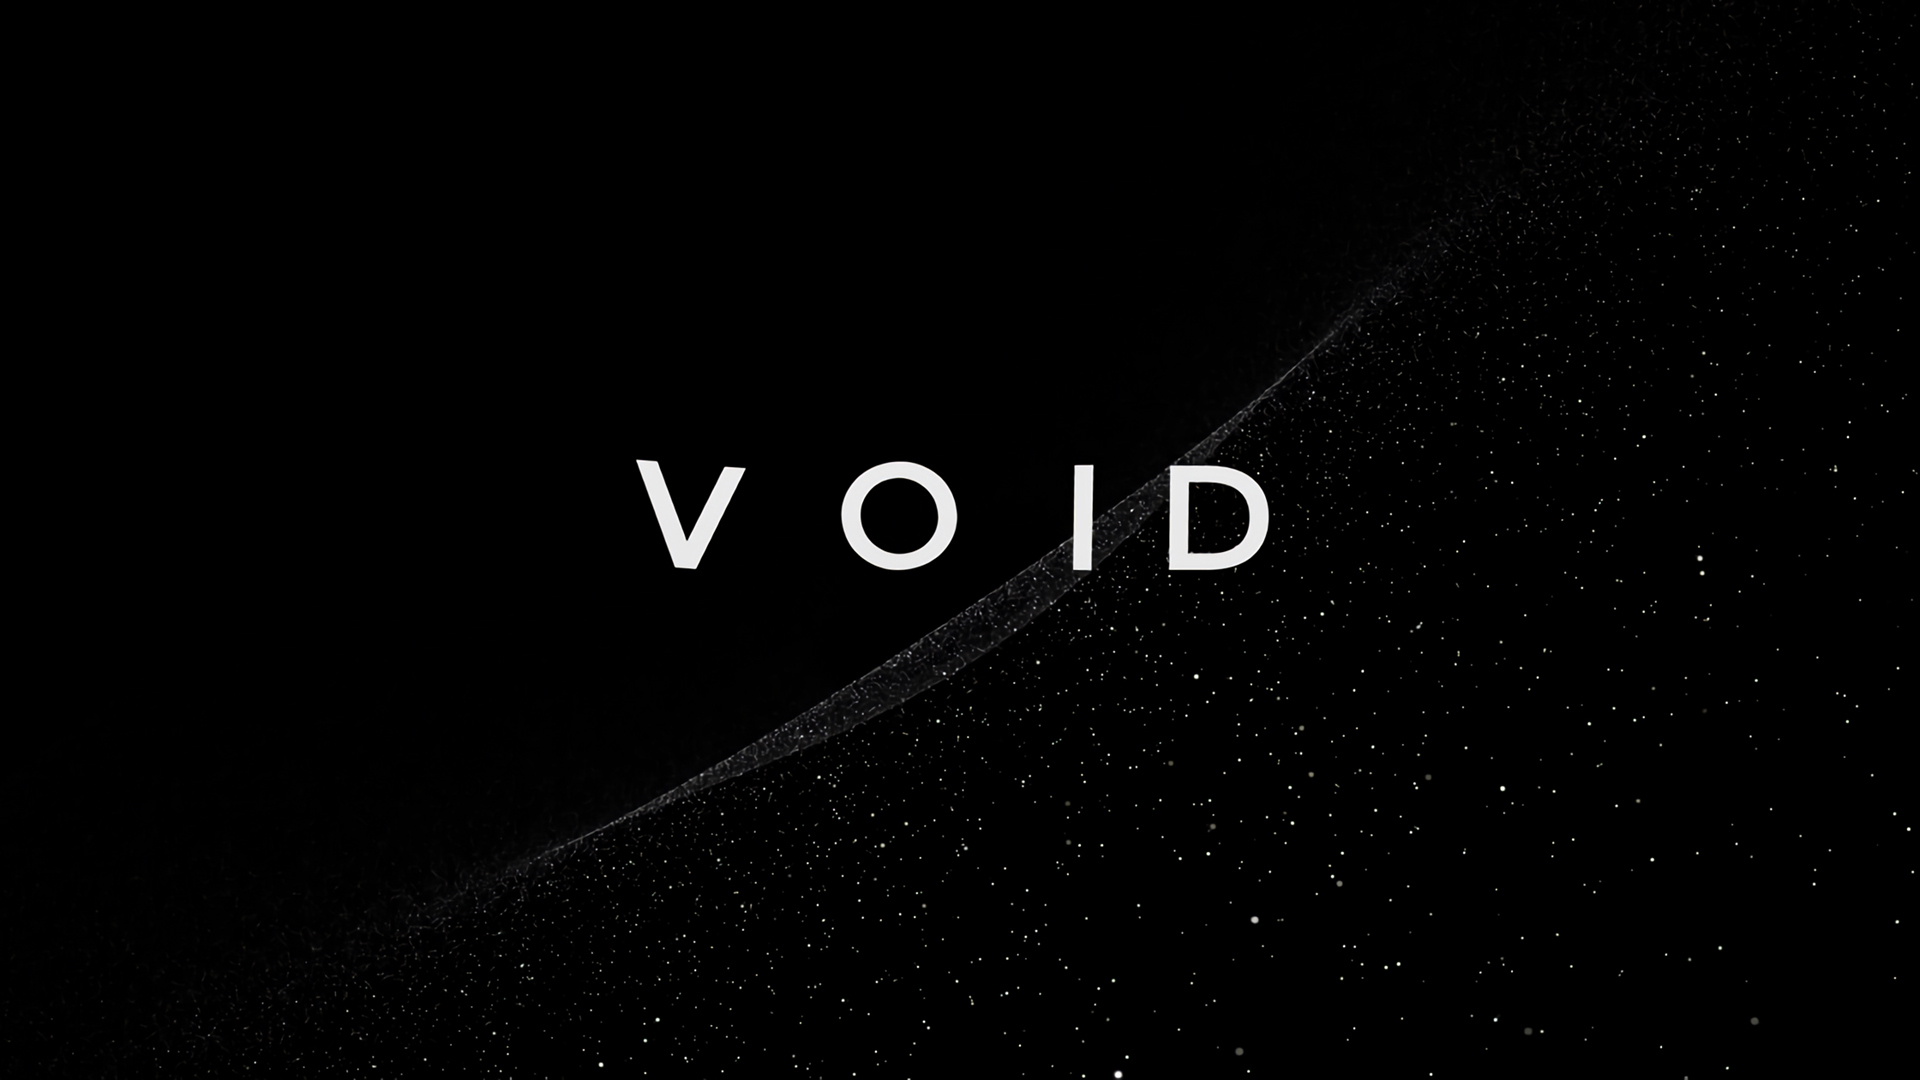 os void.